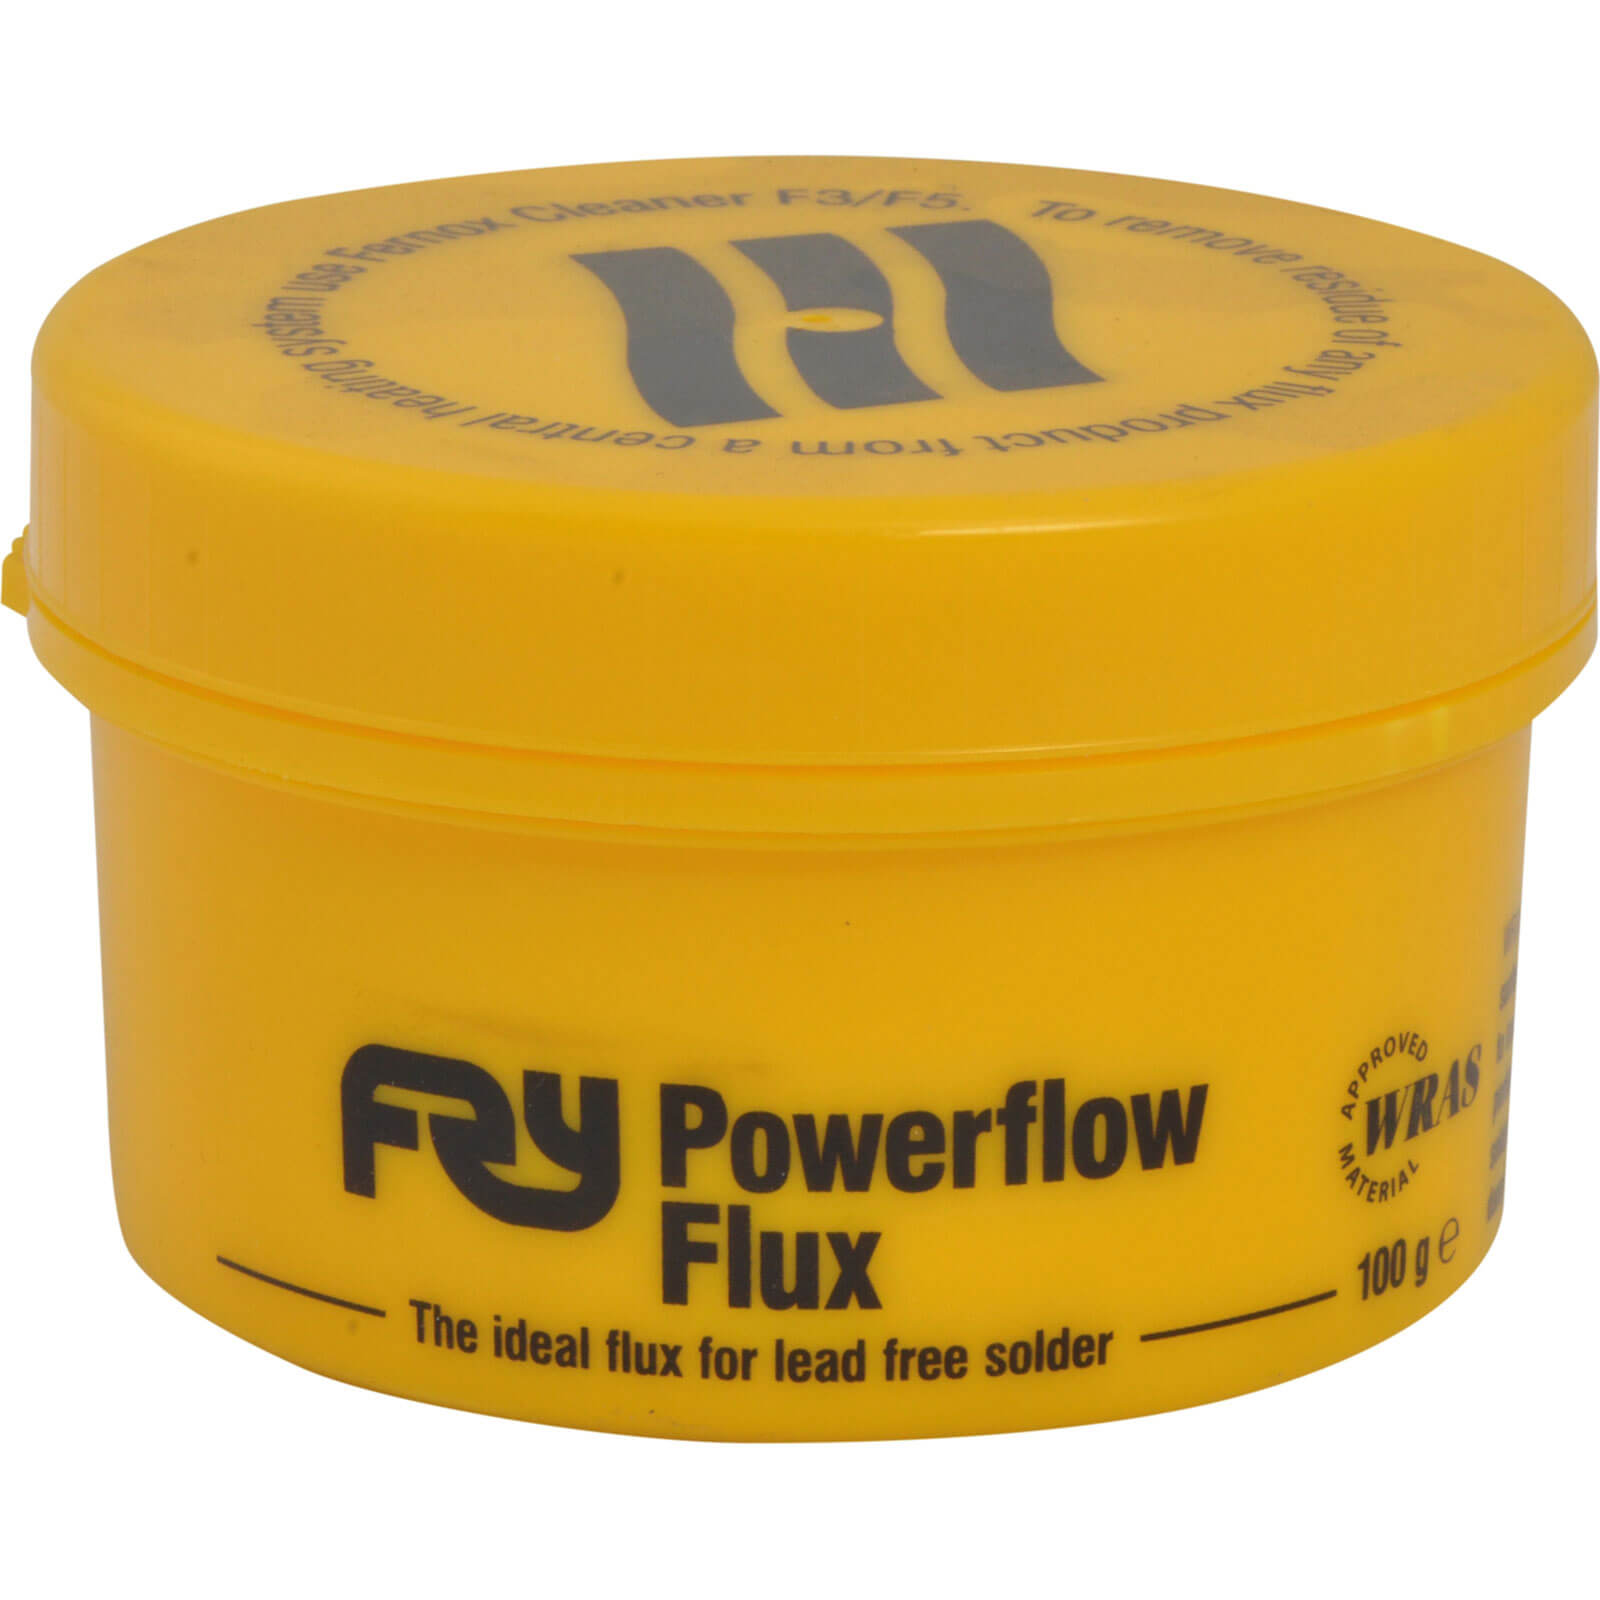 Image of Frys Powerflow Flux 100g